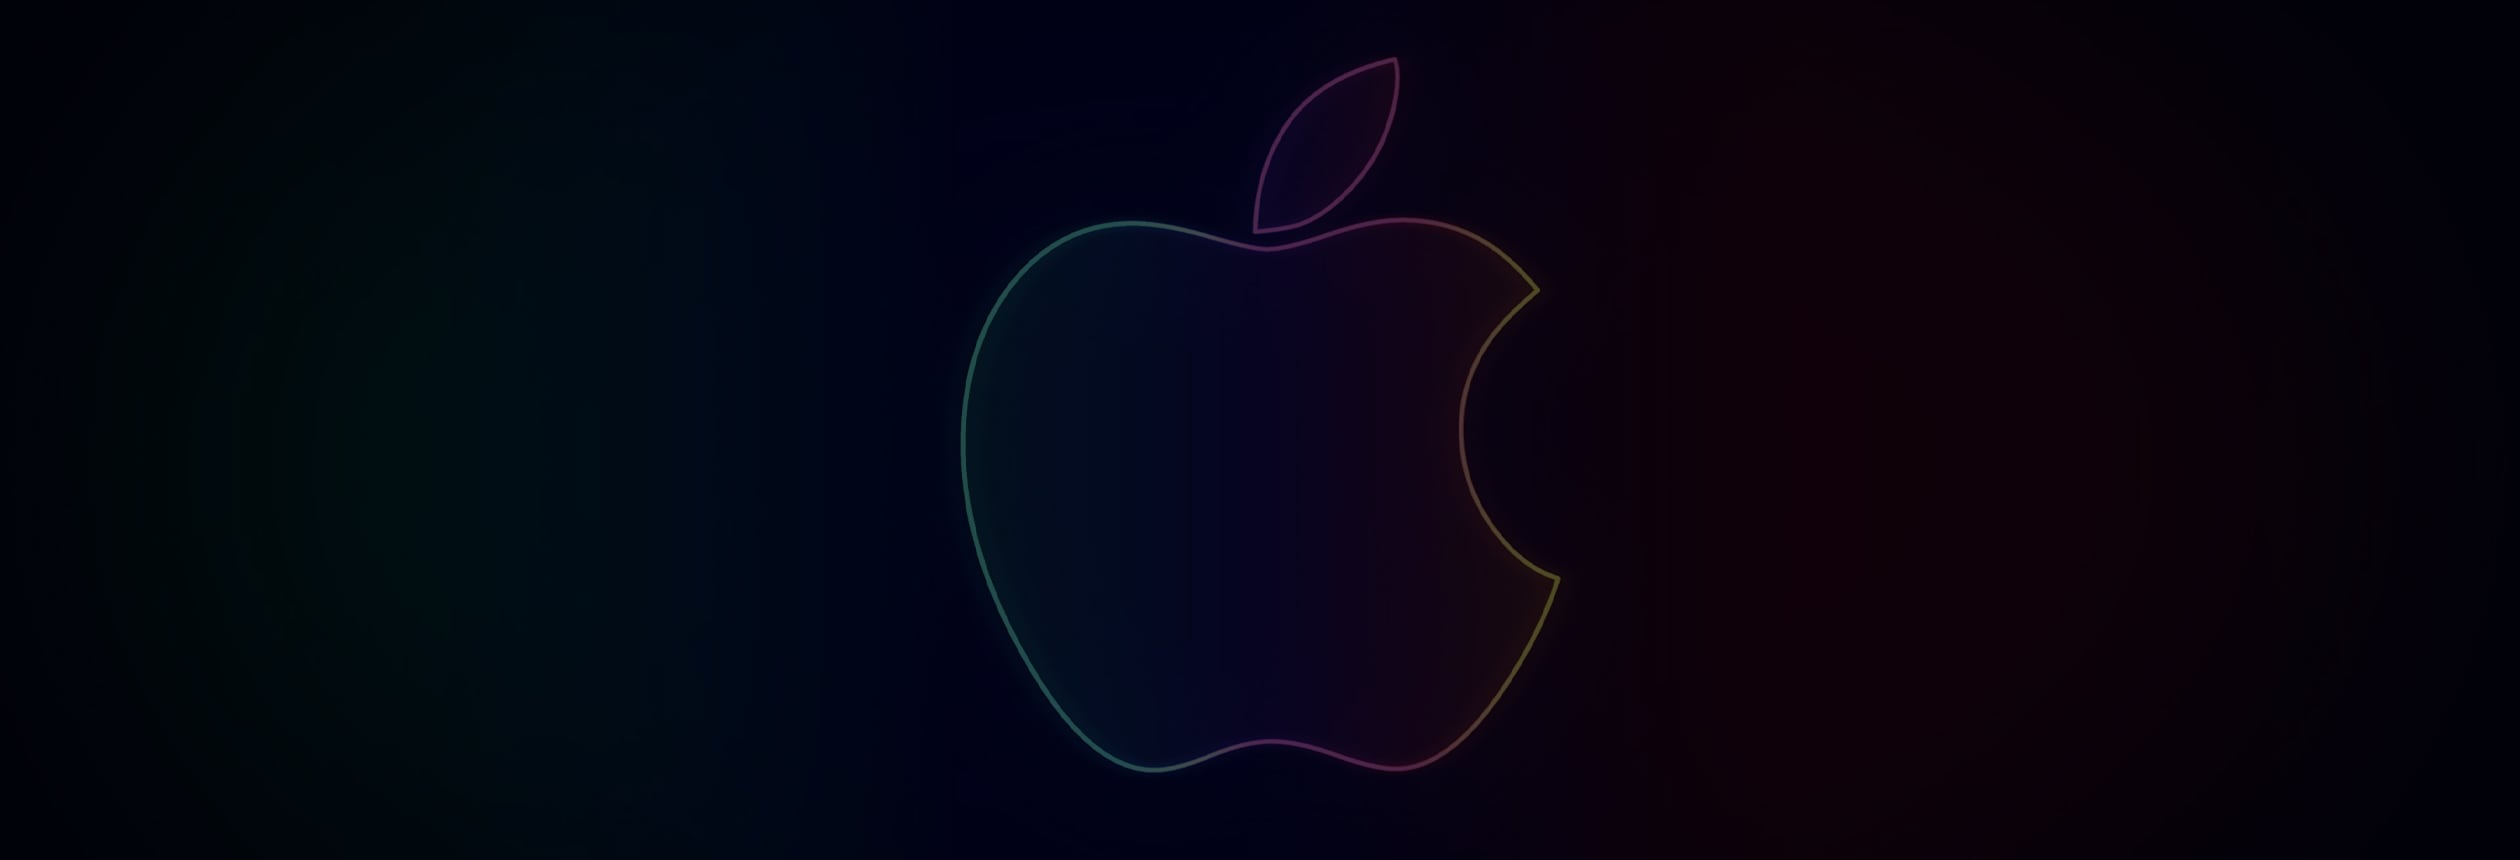 Apple branding & advertising, Innovation podcast